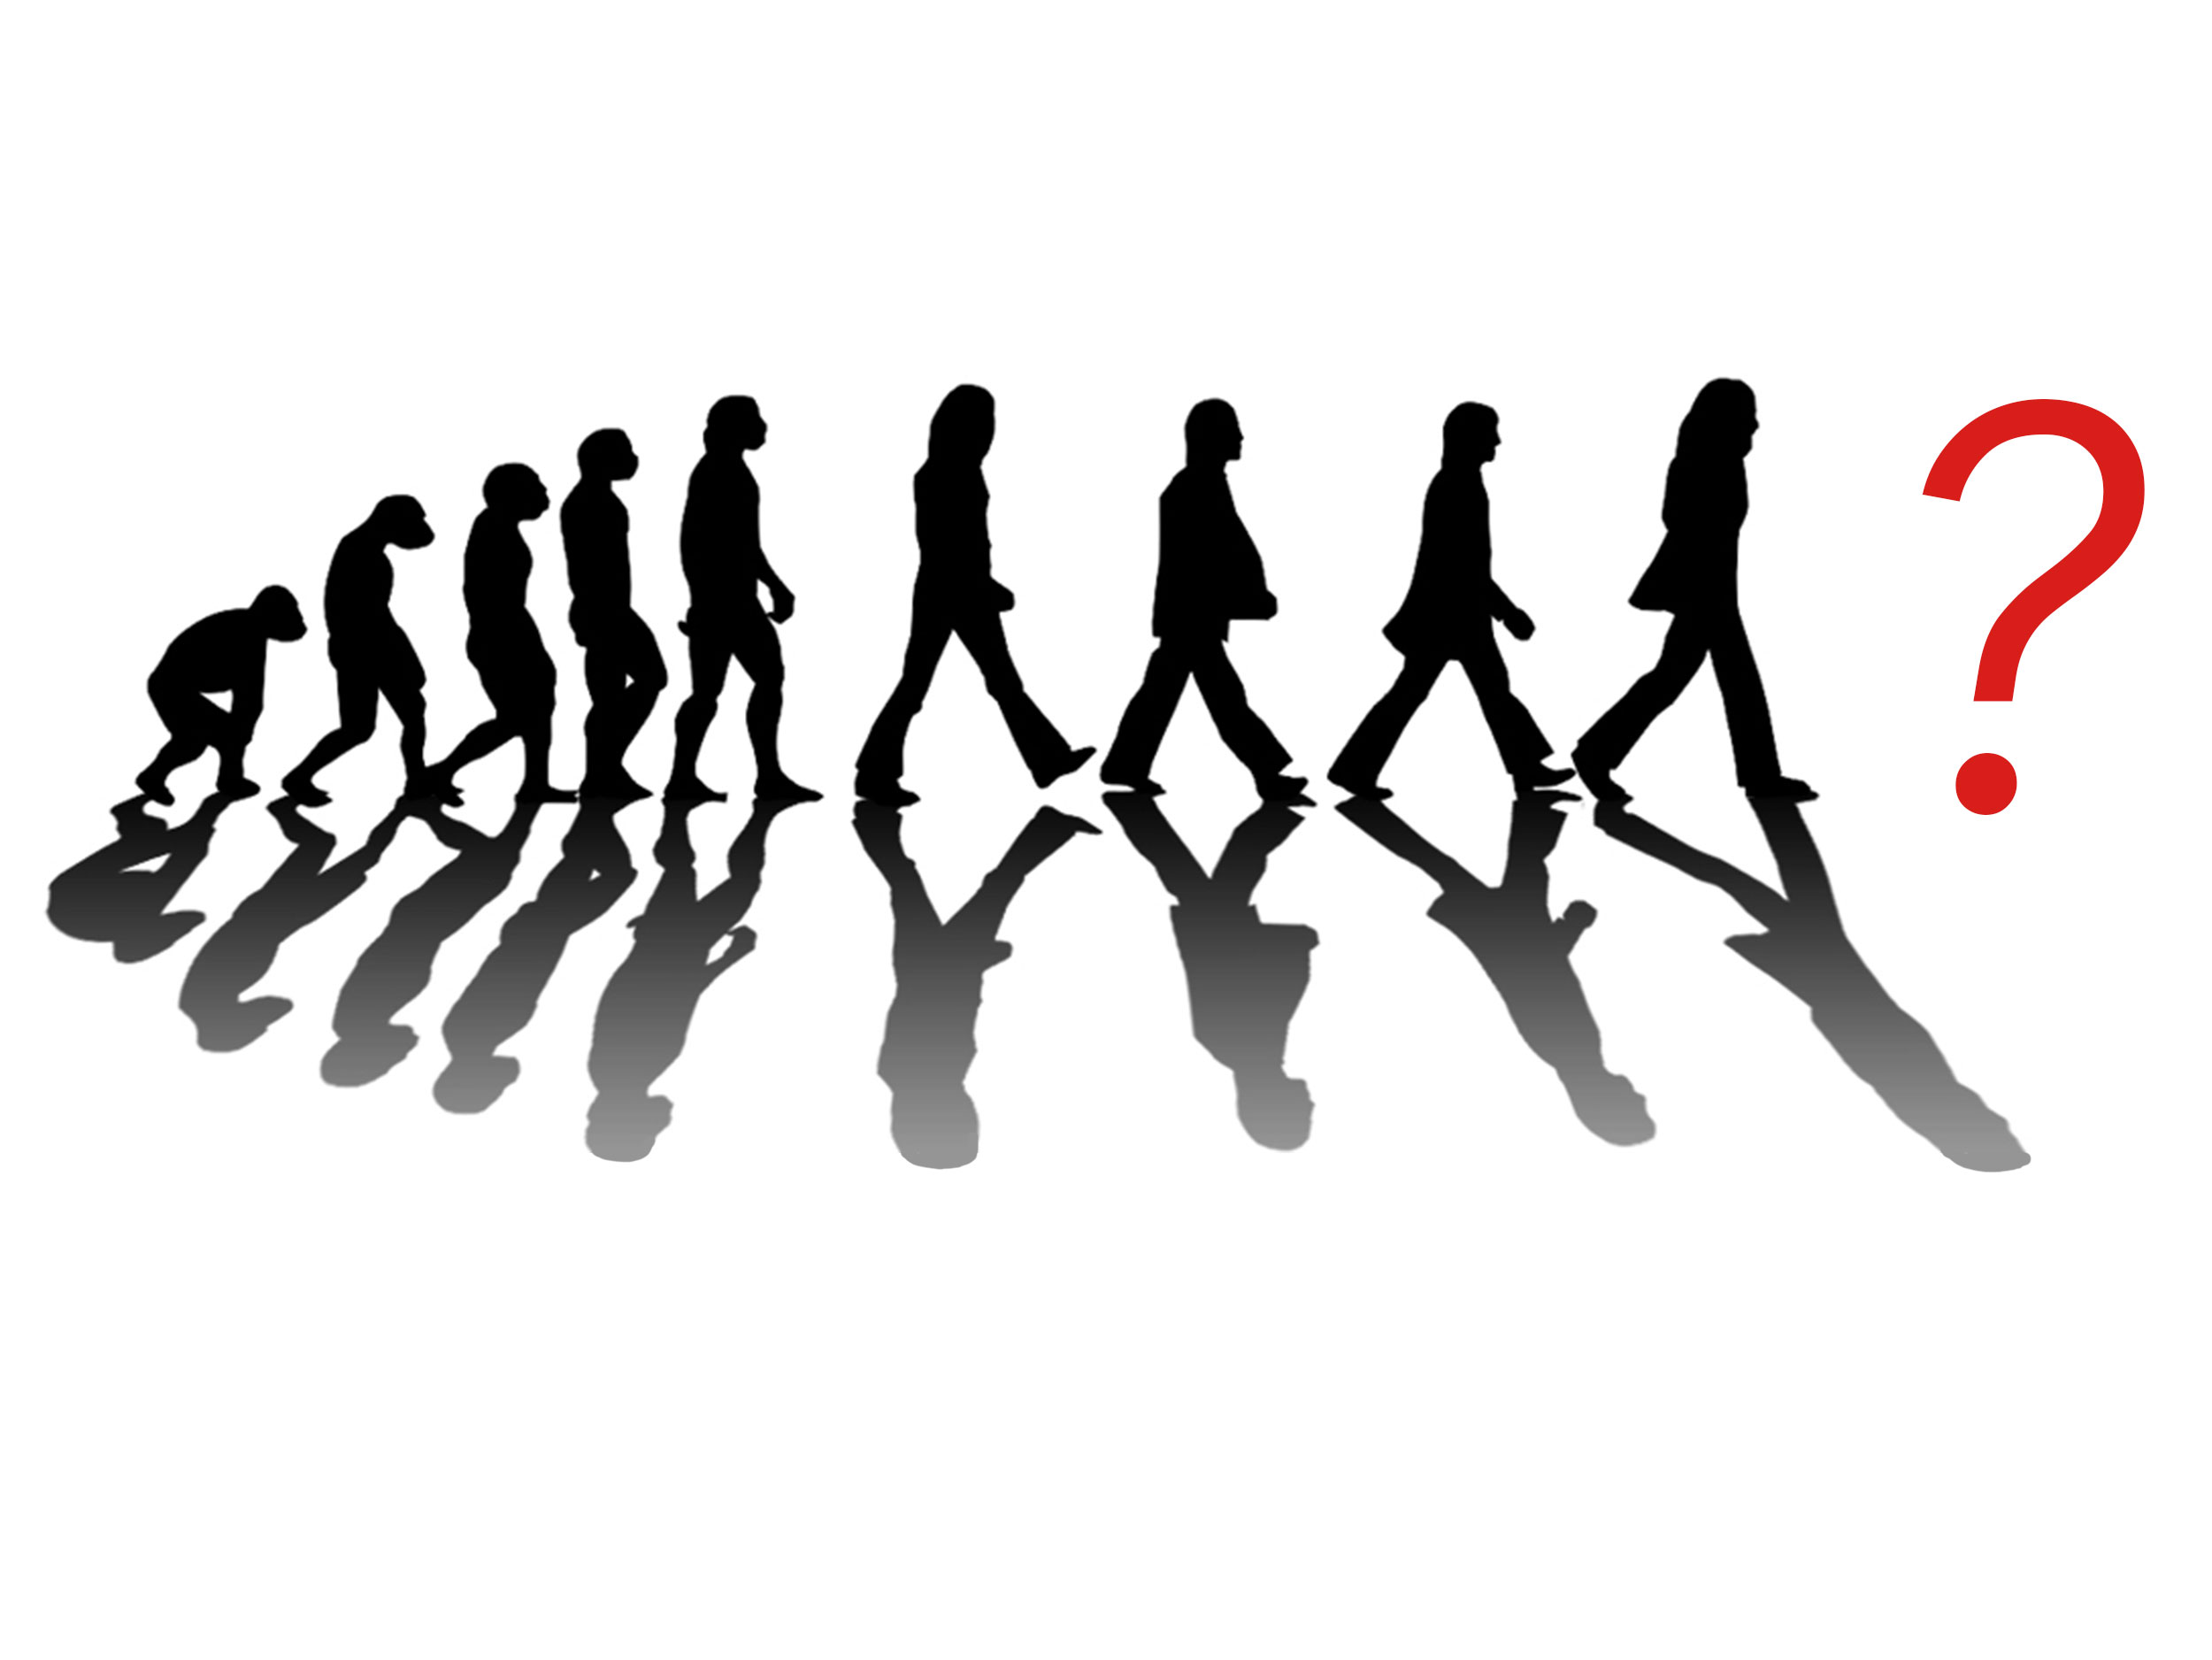 Развитие прогресс эволюция. Эволюция Битлз. Эволюция общества. Человечество развивается. Эволюция человеческого сообщества.